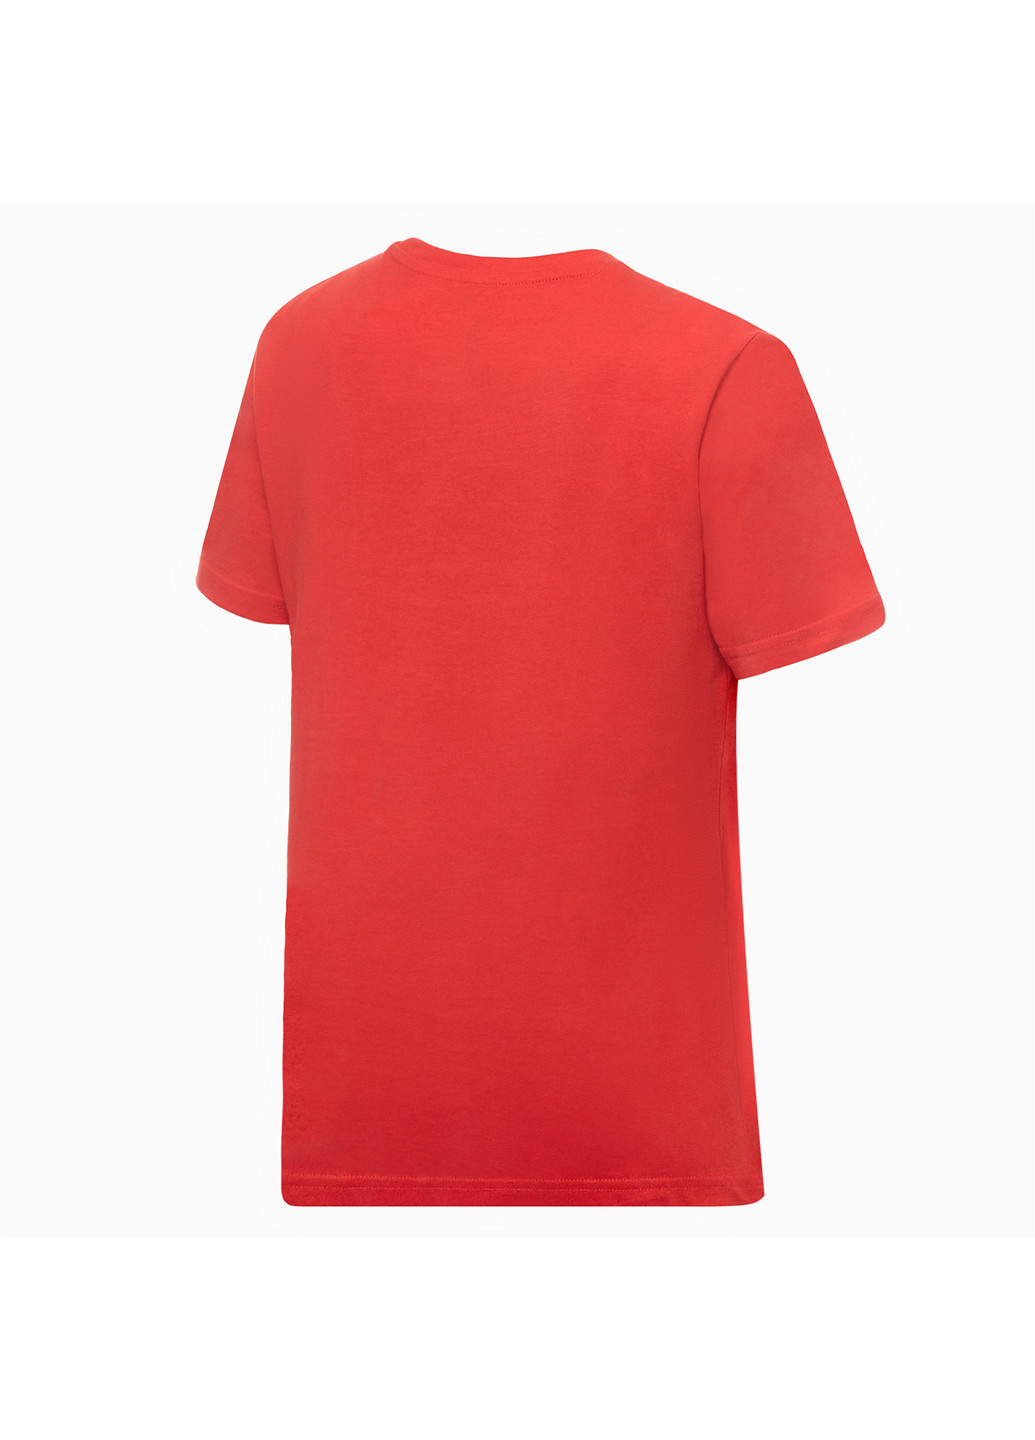 Червона демісезонна дитяча футболка boys cat logo tee Puma